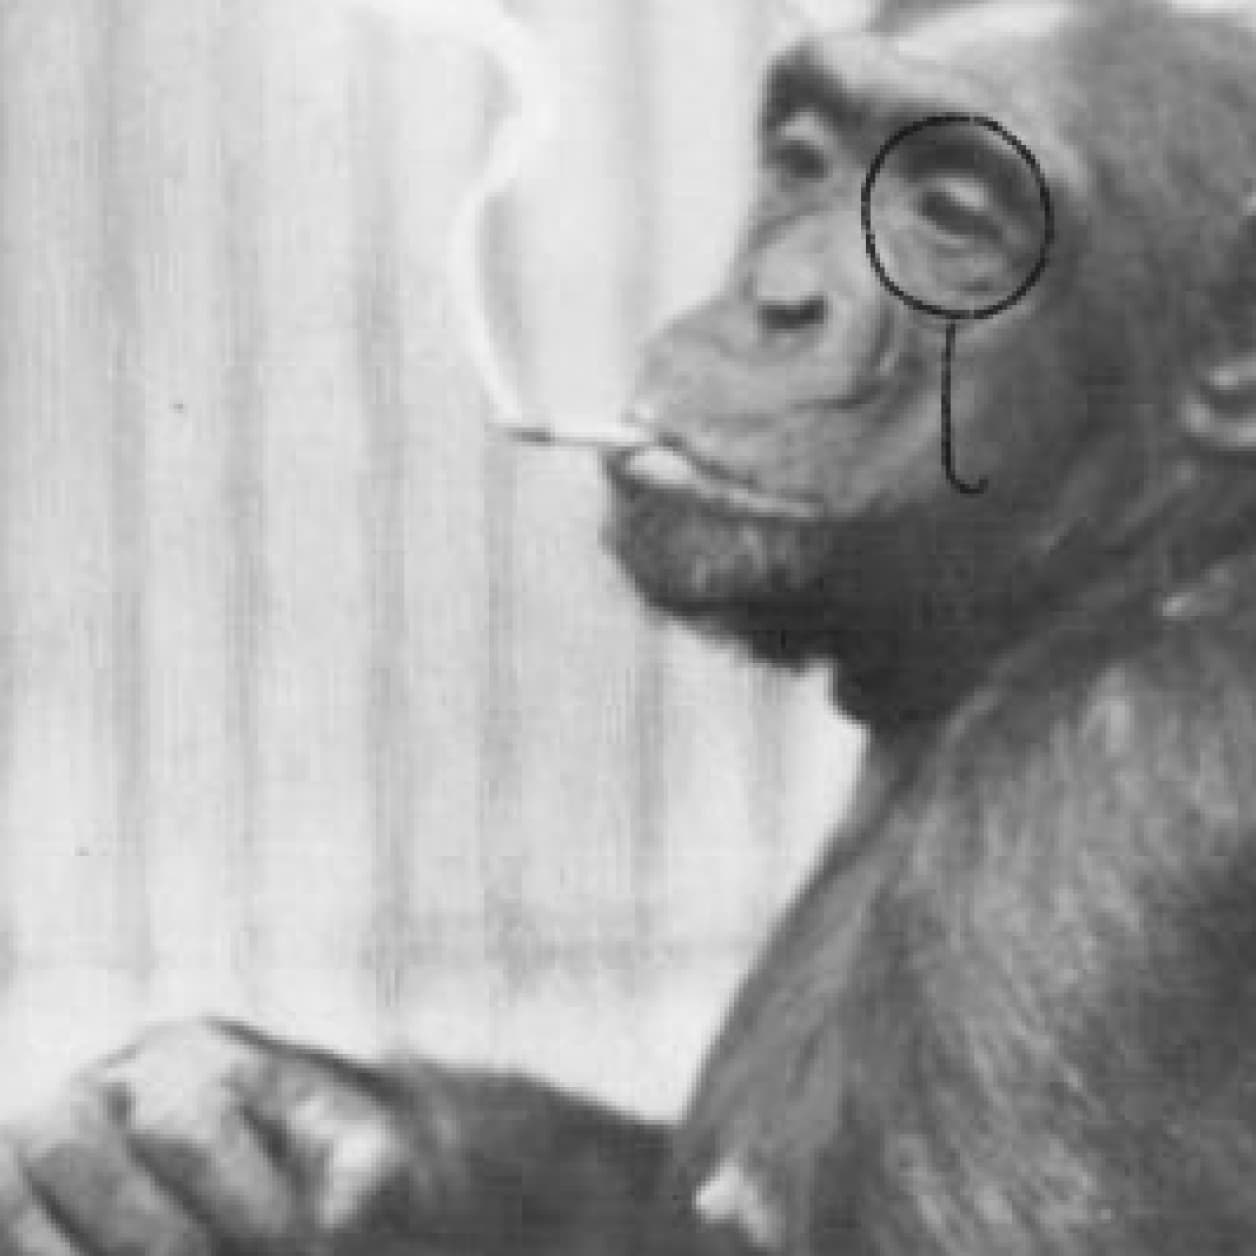 A monkey smoking a cigarette.